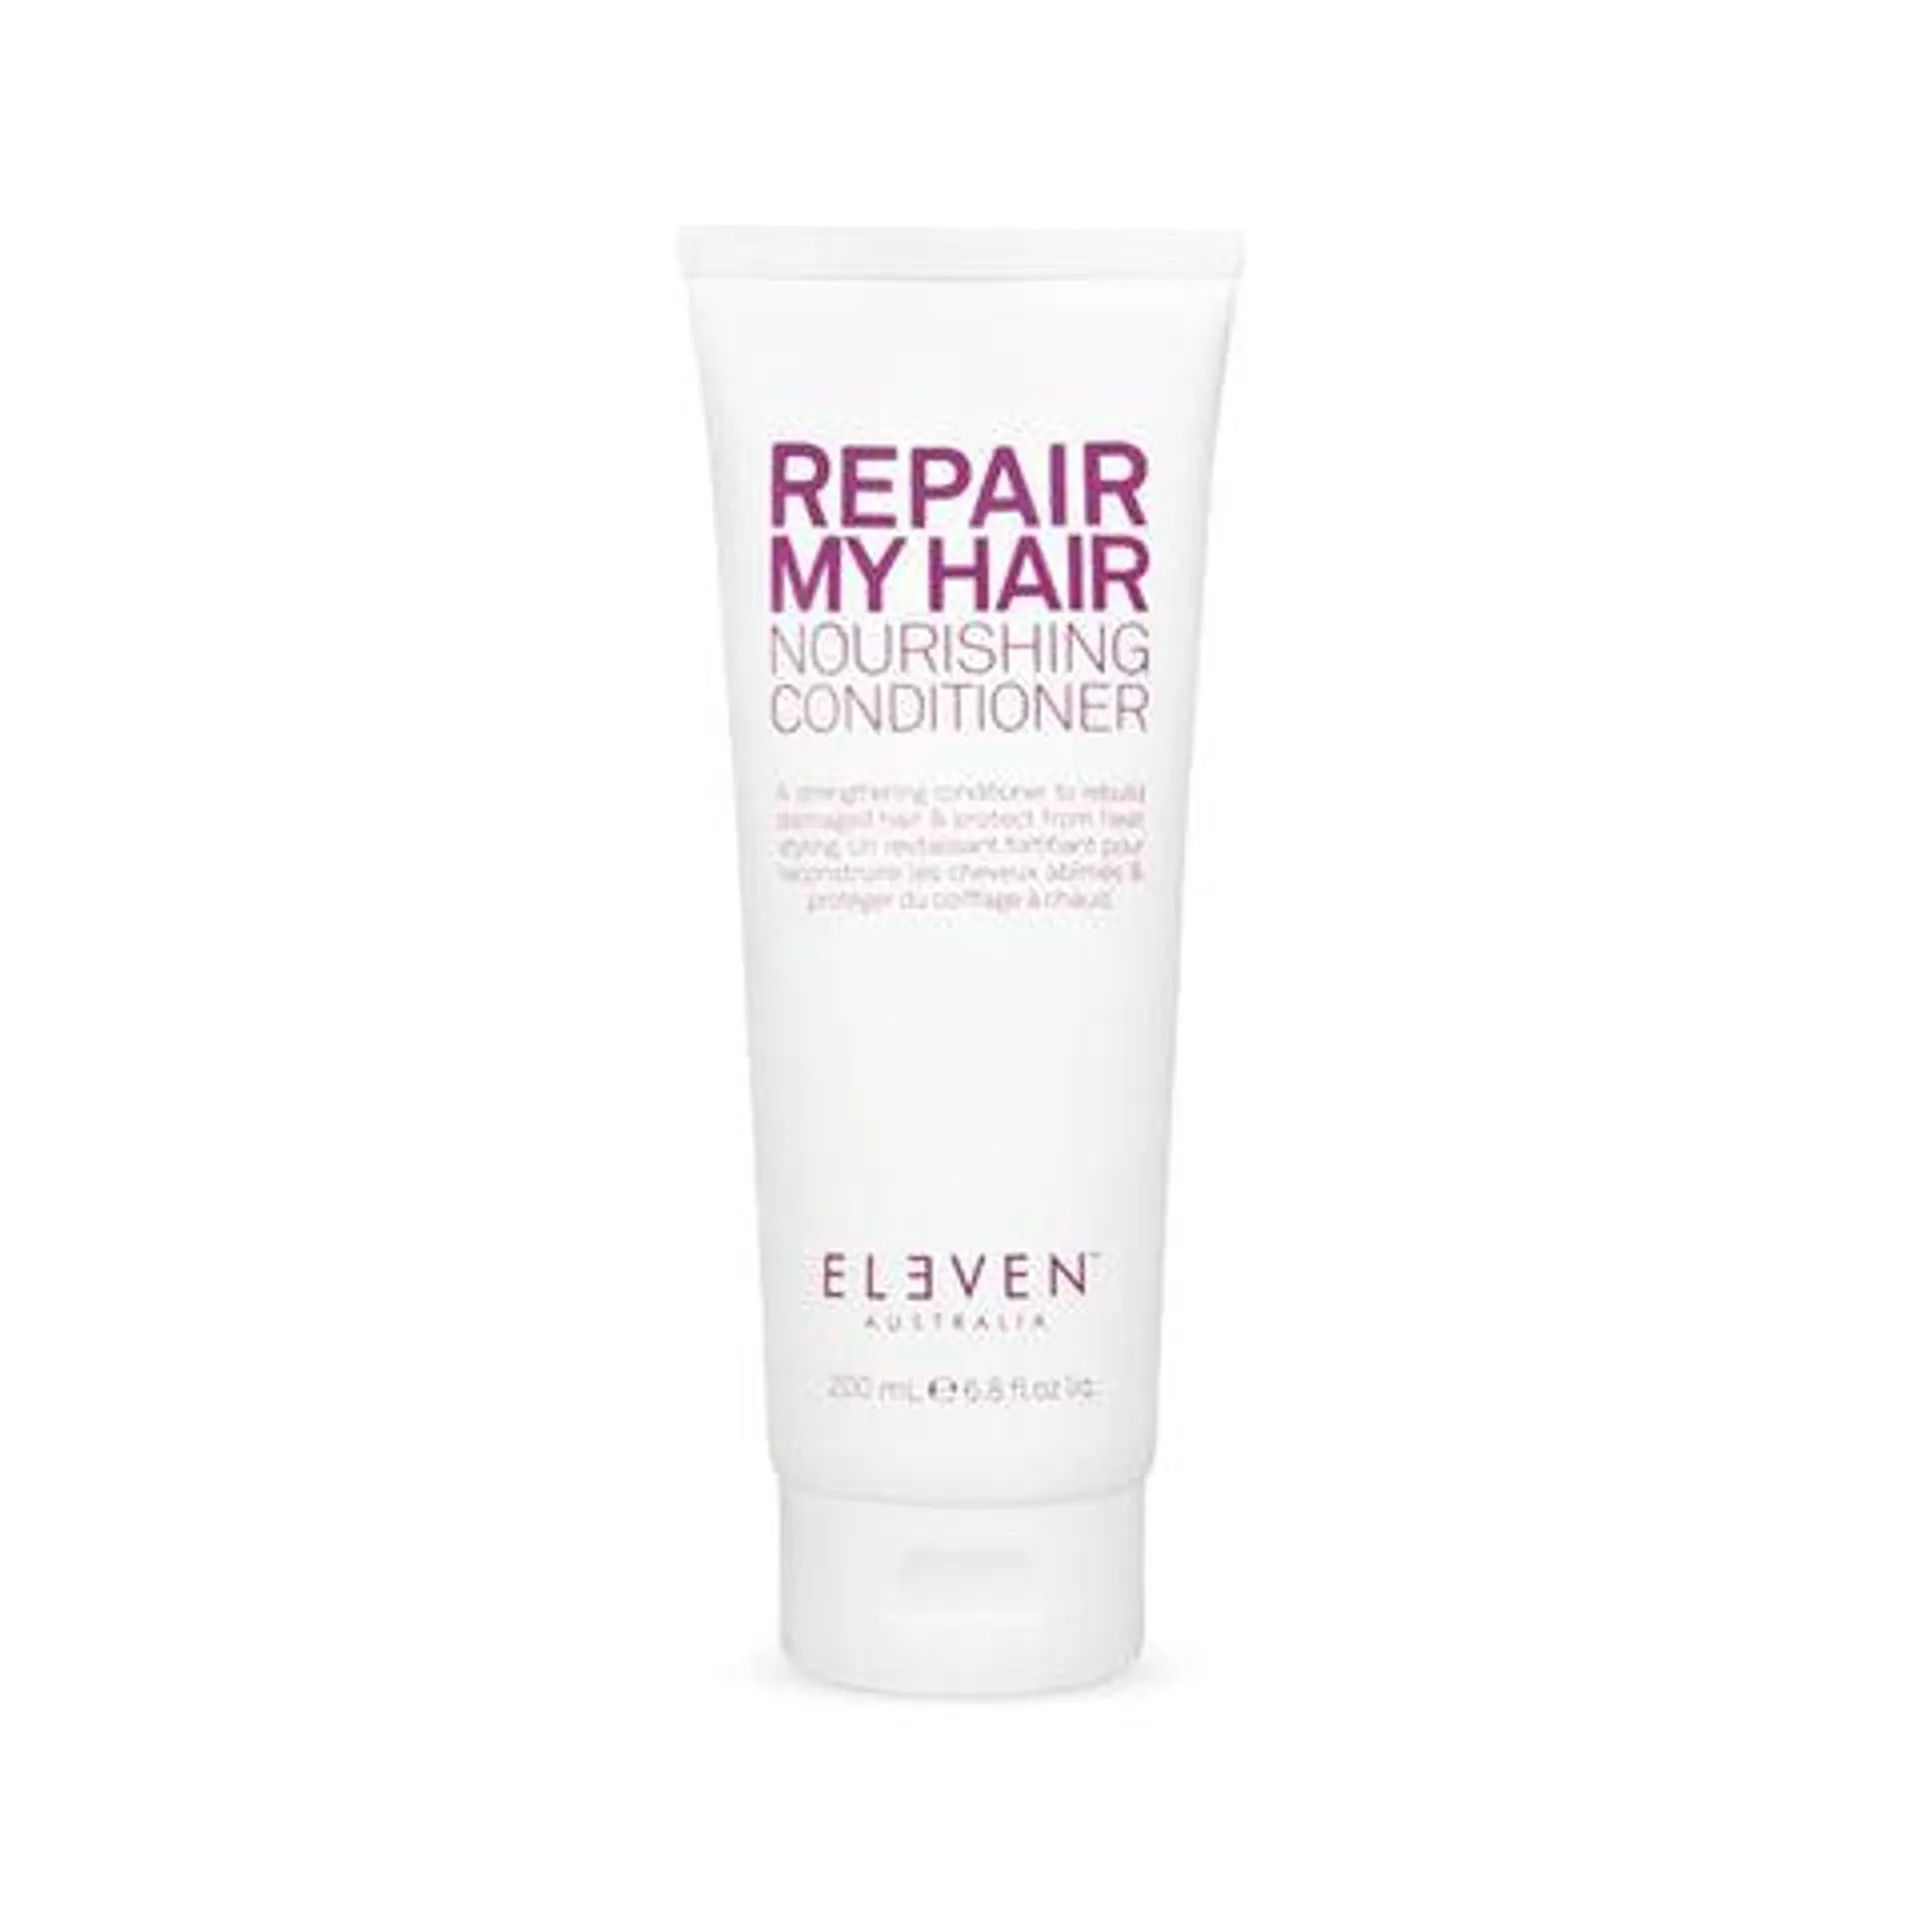 Eleven Australia Repair My Hair Conditioner 200ml